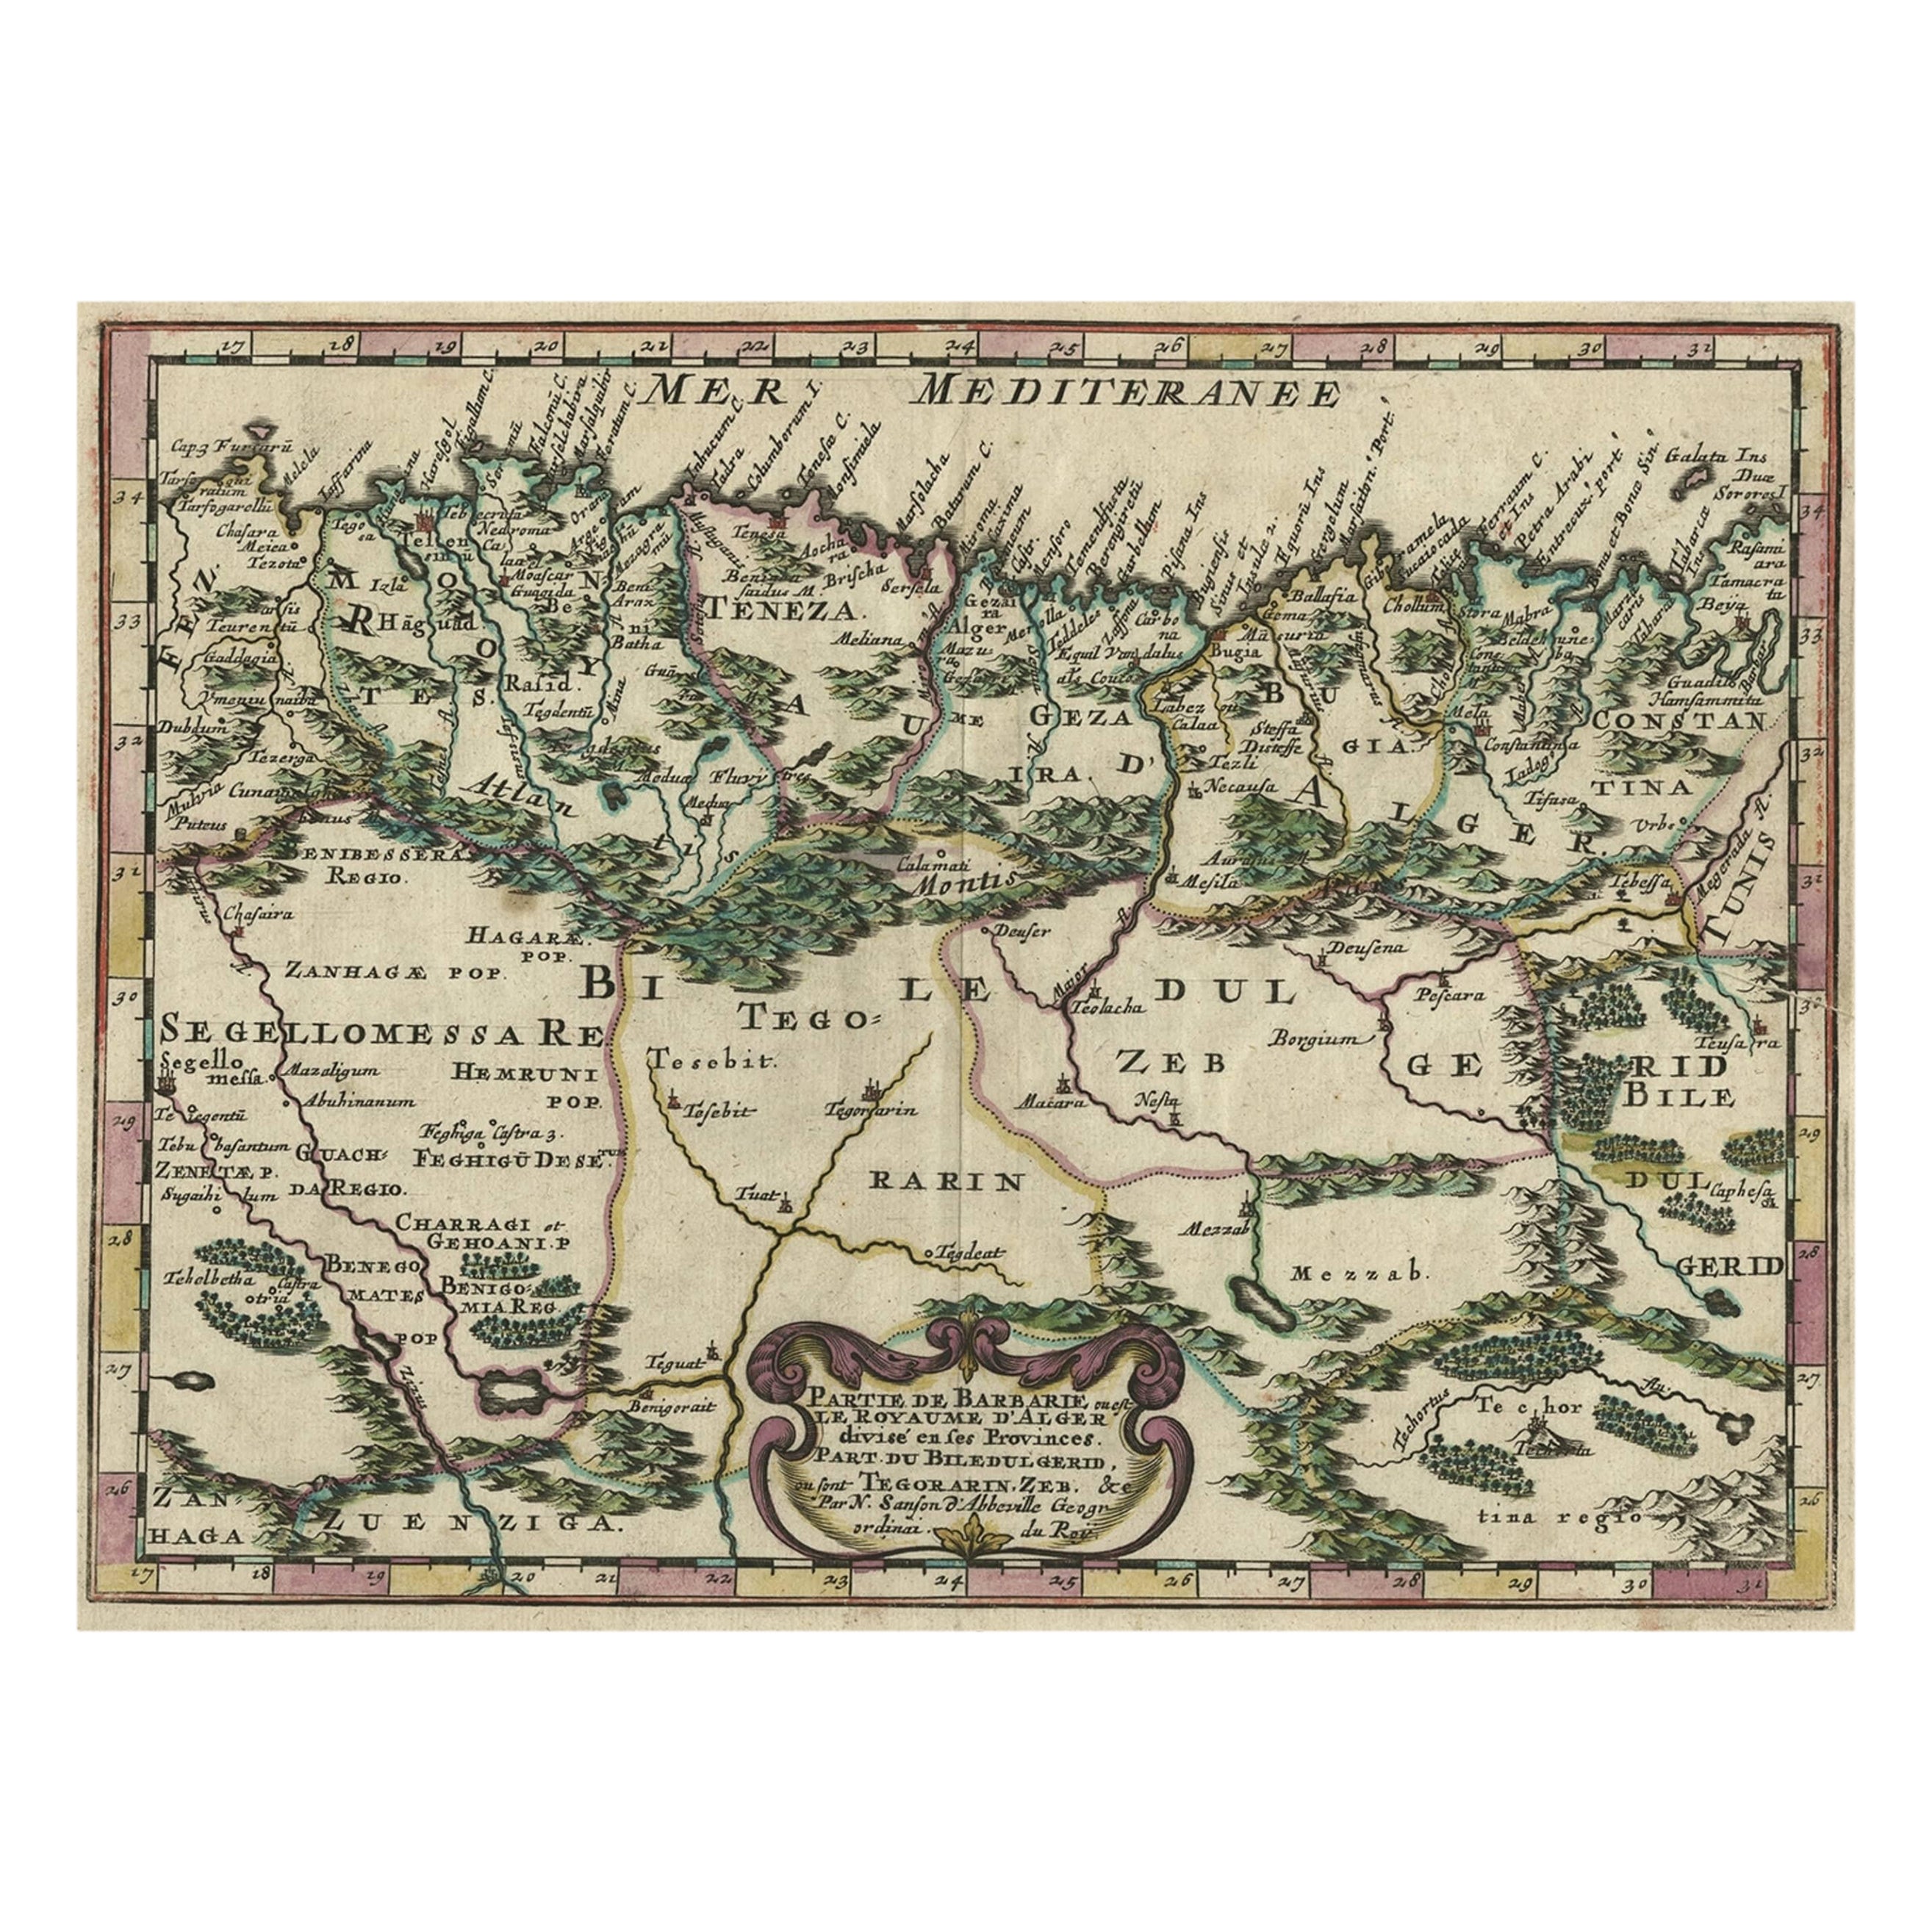 Carte gravée sur cuivre montrant la côte algérienne de l'Afrique du Nord, publiée en 1683